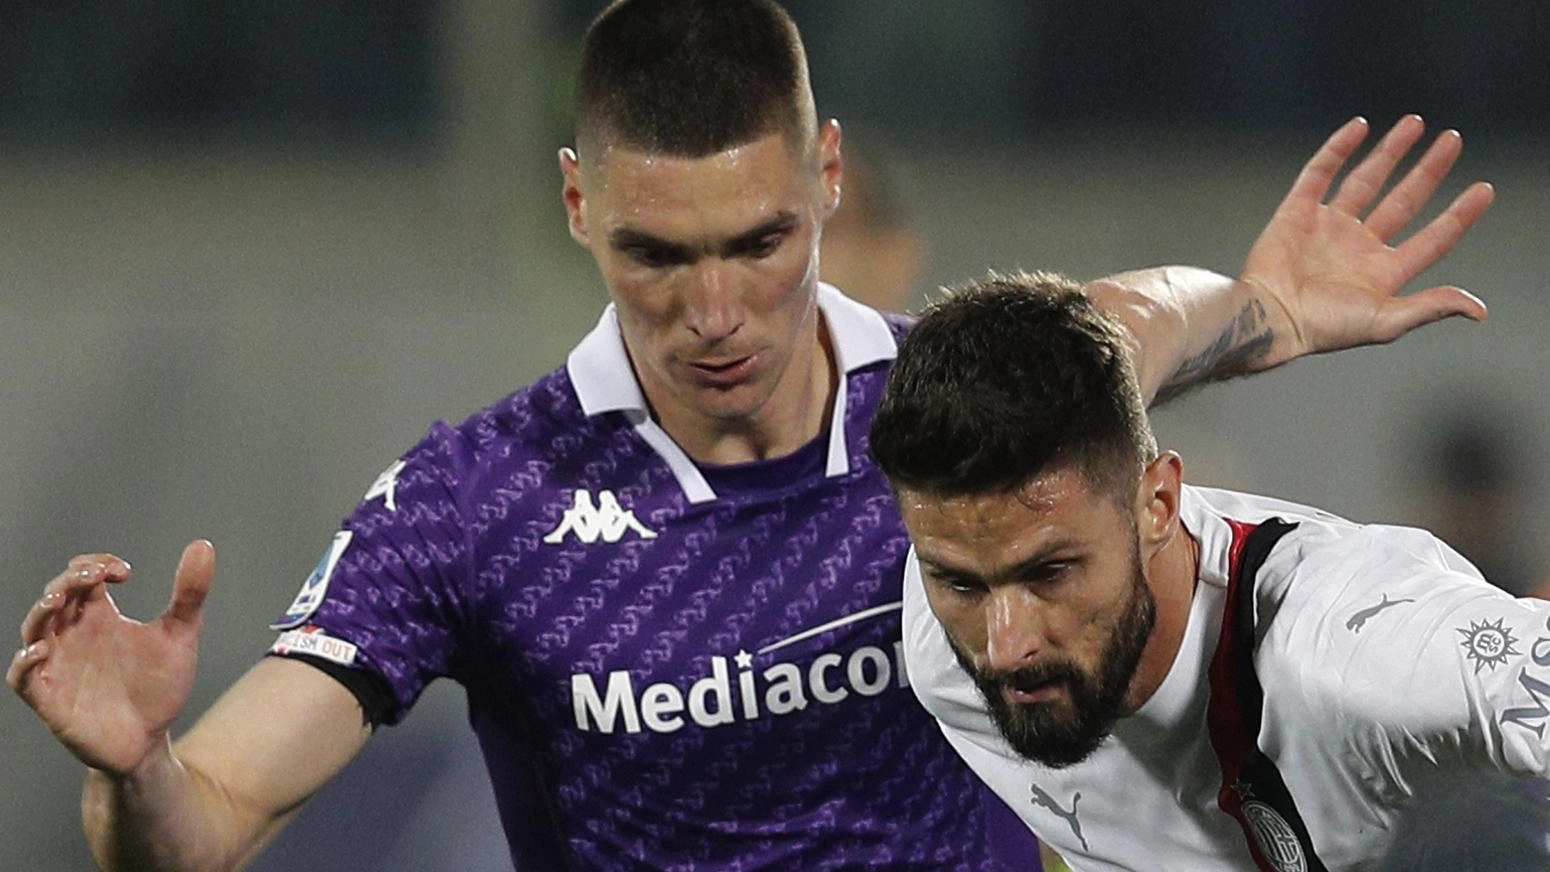 Il muro difensivo Nikola Milenkovic, una volta solido come cemento, ora mostra crepe preoccupanti. Nonostante le difficoltà, la Fiorentina deve puntare sul suo talento e fiducia per risollevarsi in campionato.